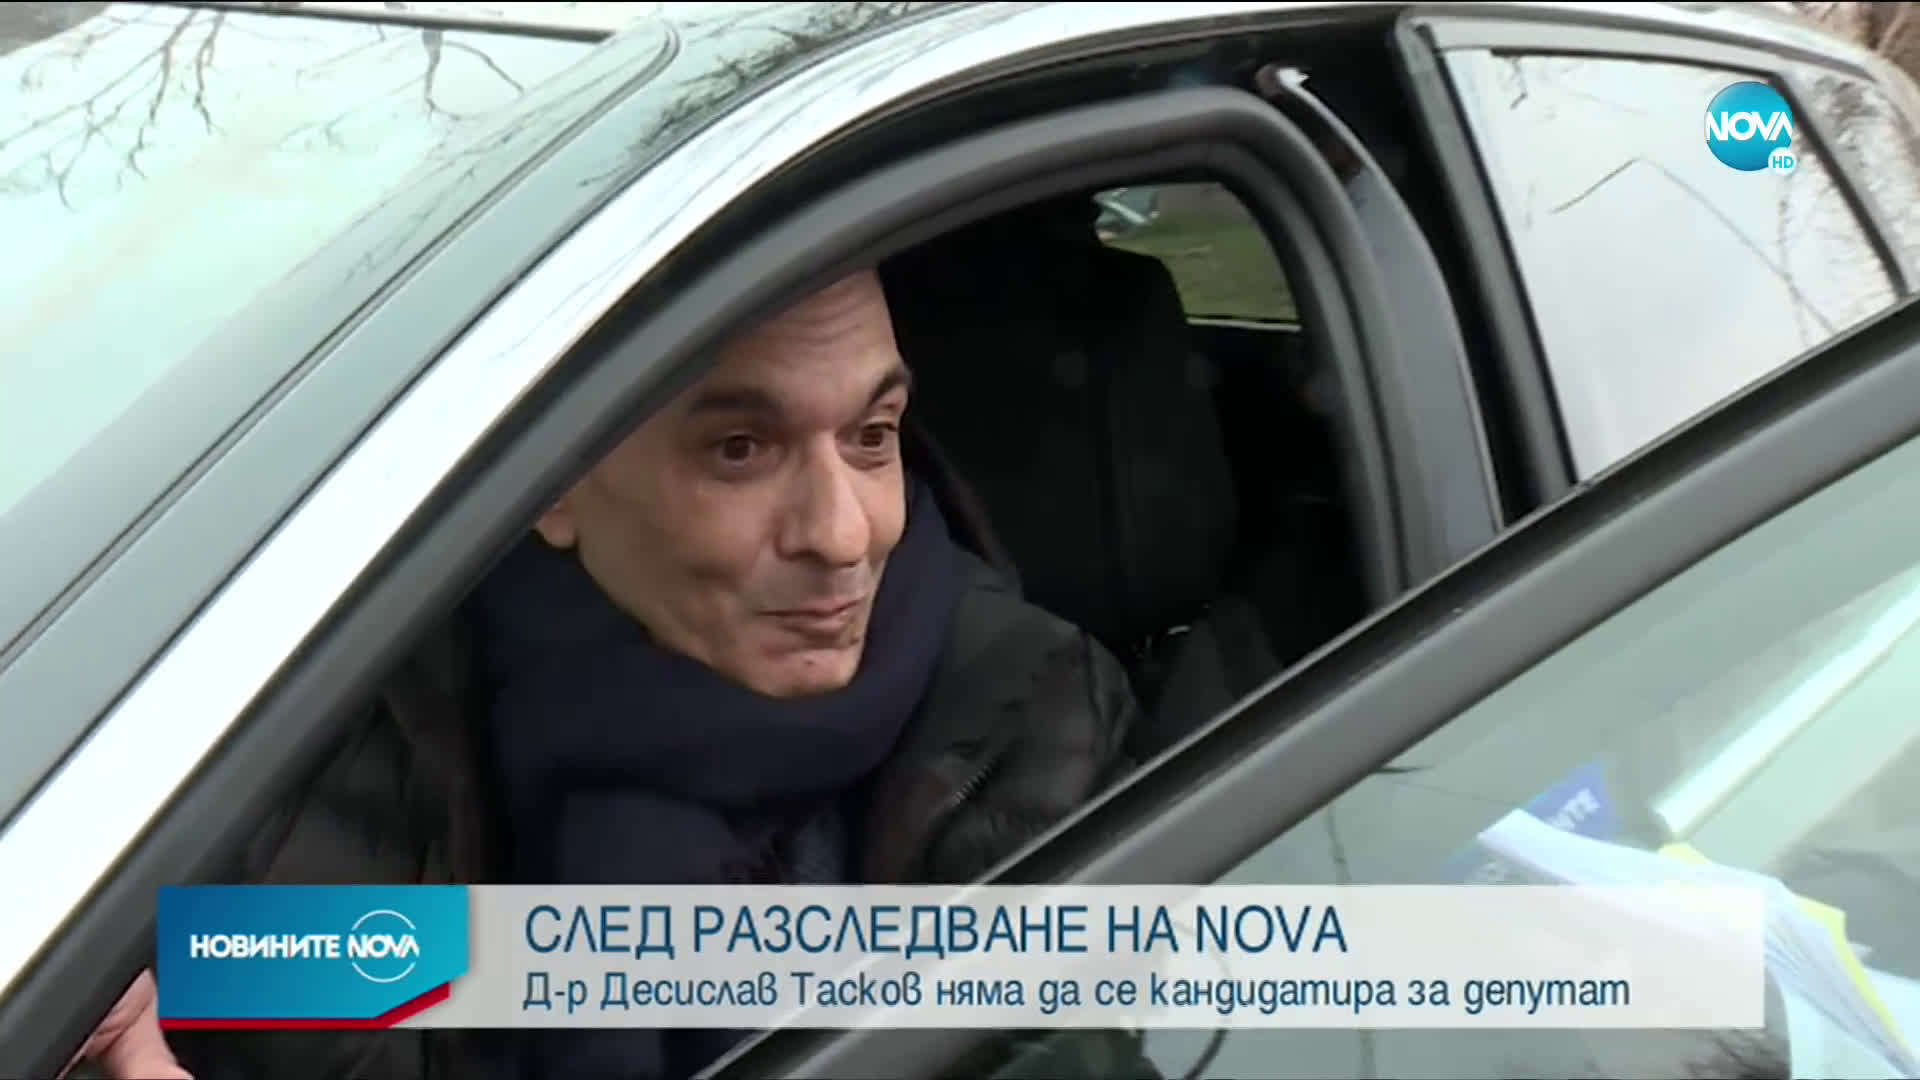 Десислав Тасков се оттегля от листата за депутат на БСП, КПКОНПИ го разследва